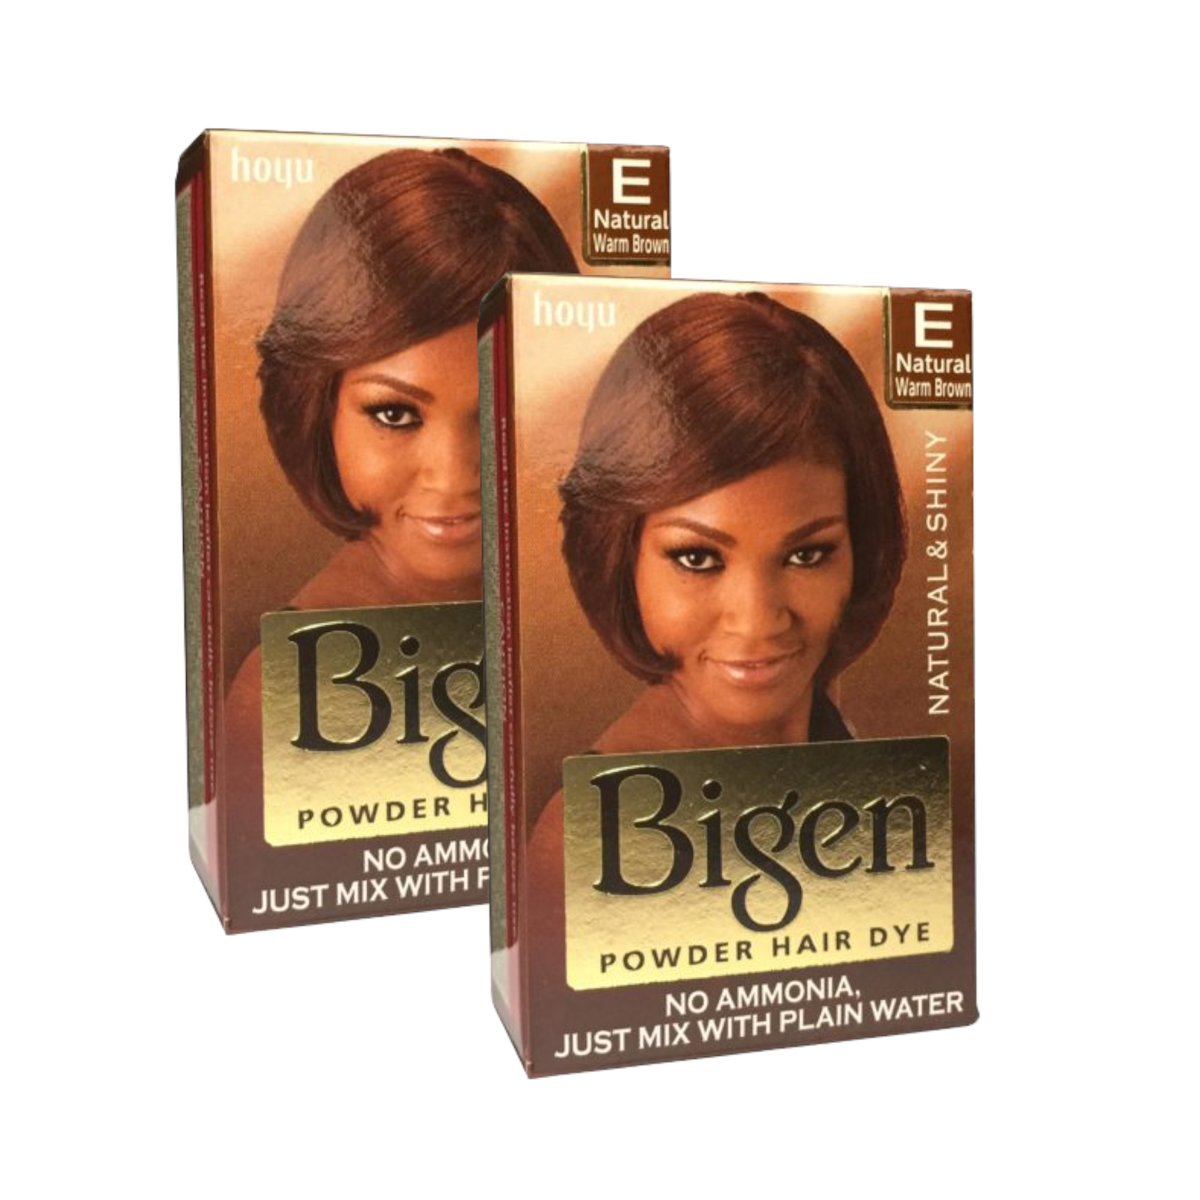 Bigen Powder Hair Dye 2 Piece - Natural Warm Brown - Paris | Buy Online in  South Africa 